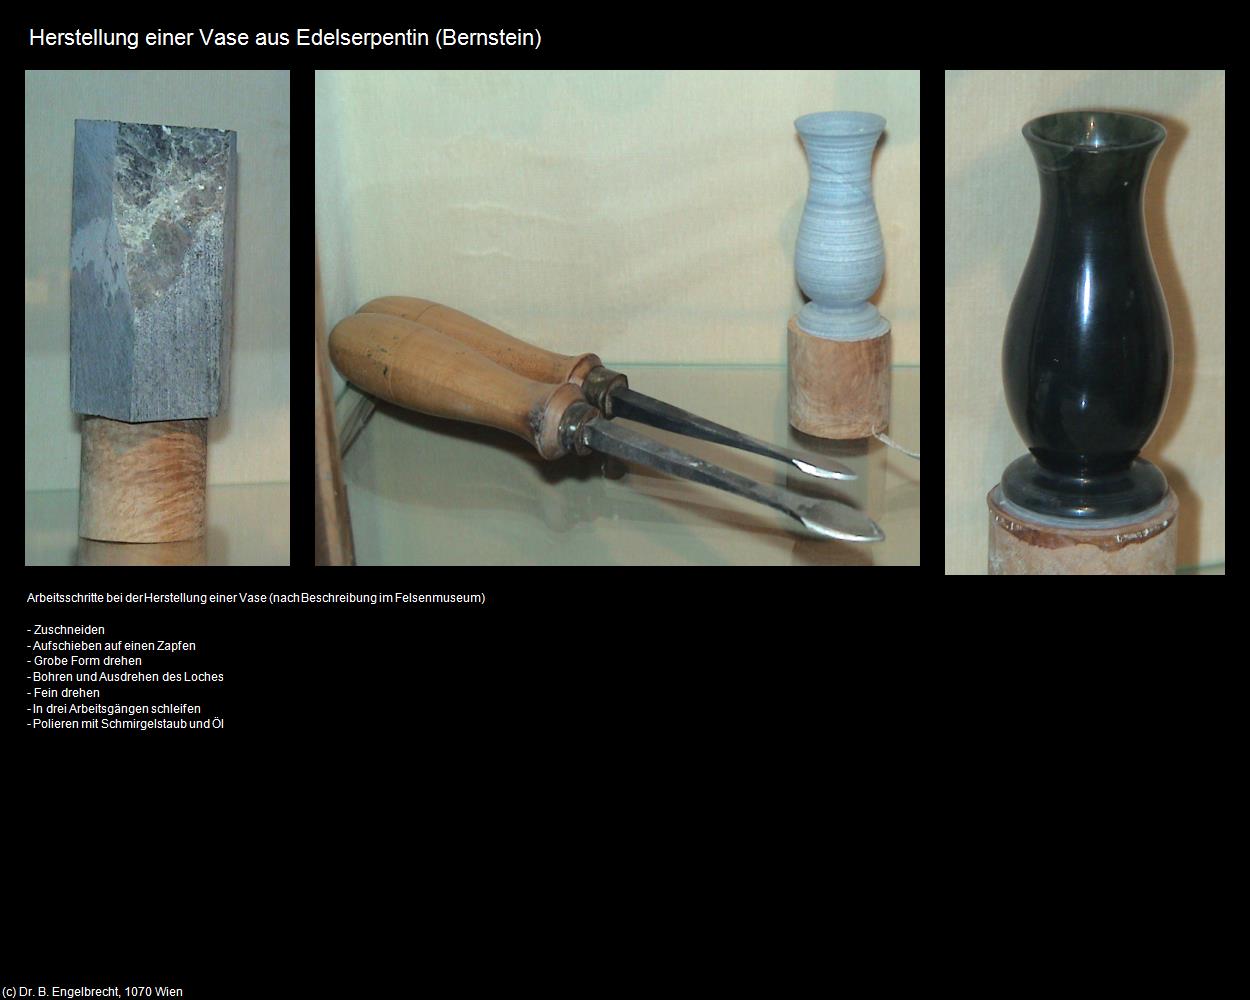 Herstellung einer Vase (Bernstein) in Kulturatlas-BURGENLAND